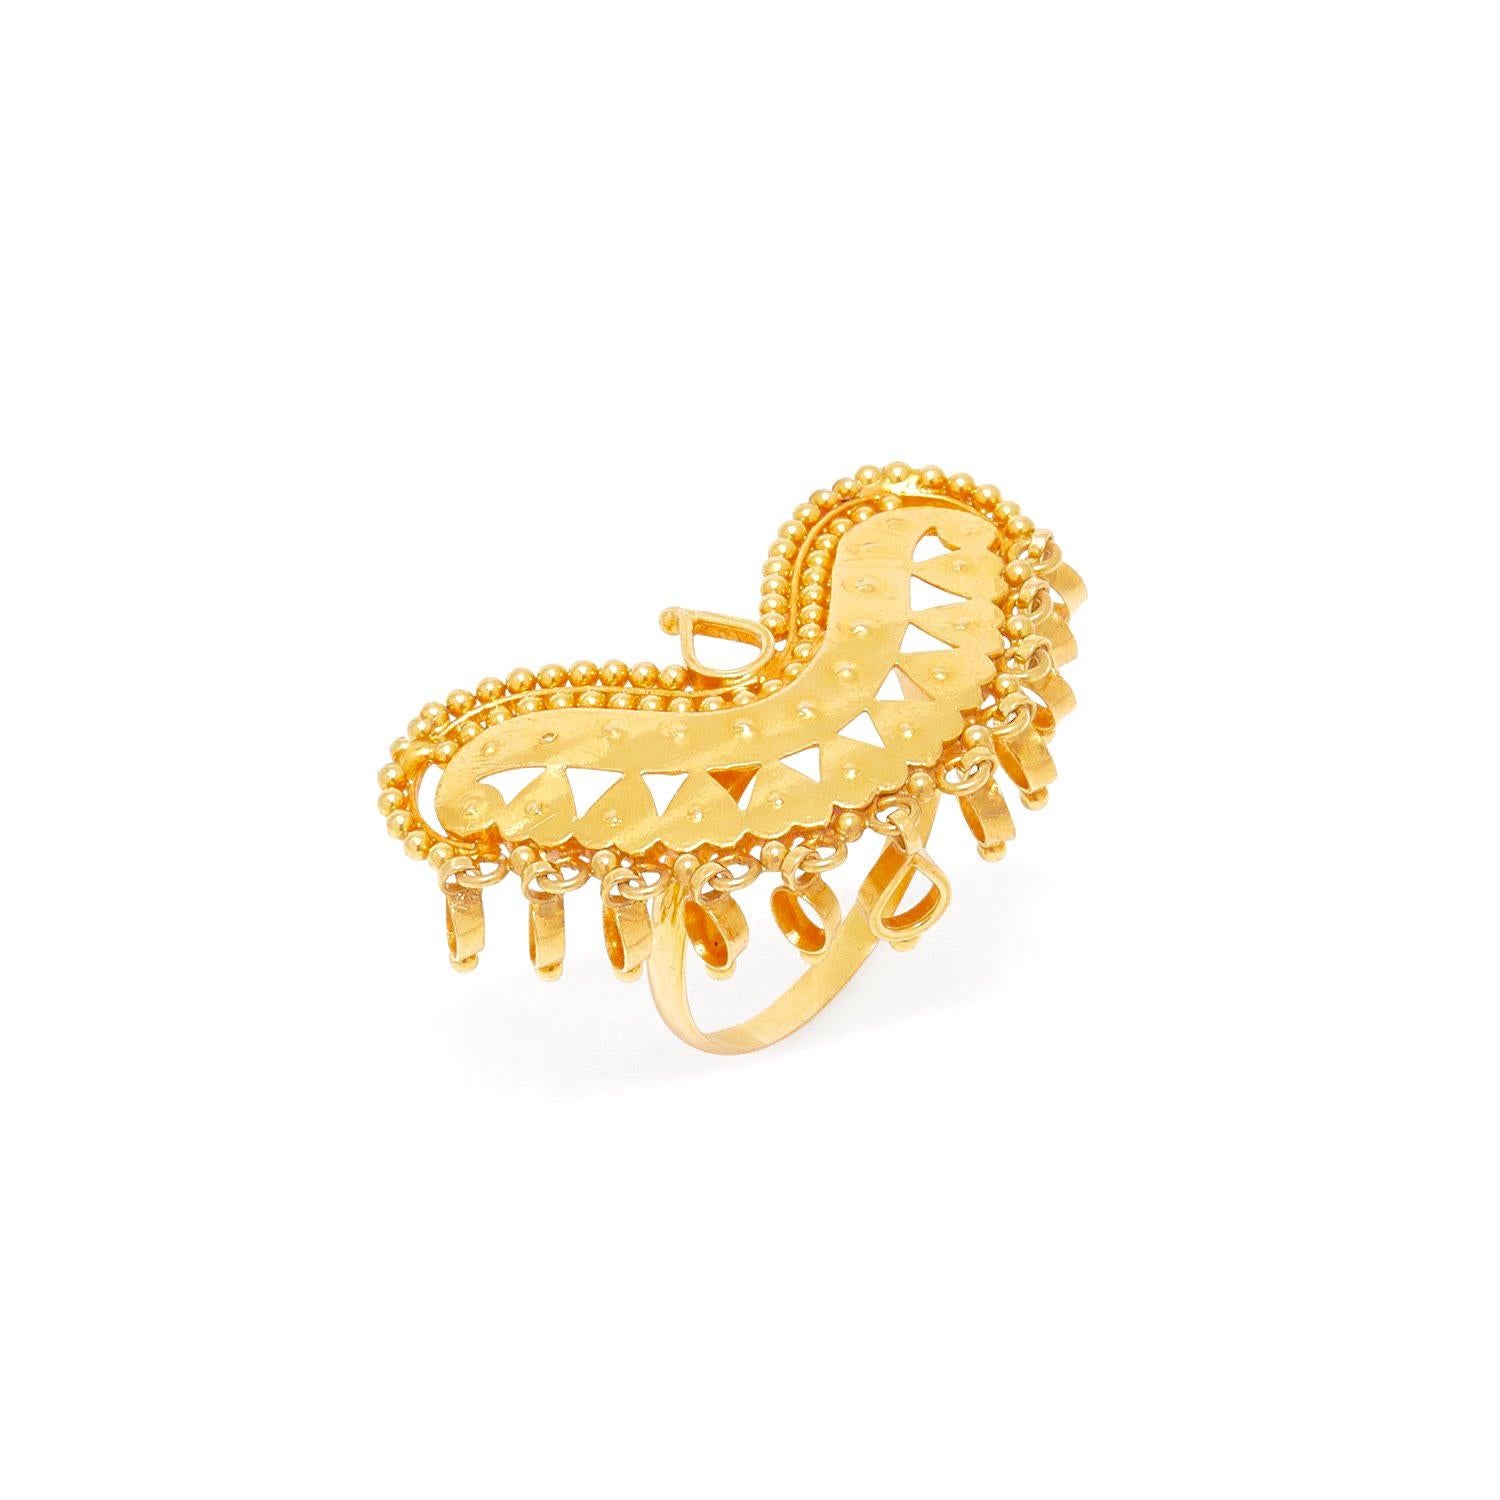 Der ultimative Jaipur Boho Style präsentiert sich in einem großen, herzförmigen Ring aus 22 Karat Gold, handgefertigt im traditionellen Rajasthani-Stammesstil mit einem Kranz aus goldenen Kreisen, die der Trägerin gutes Chi bringen sollen.

-